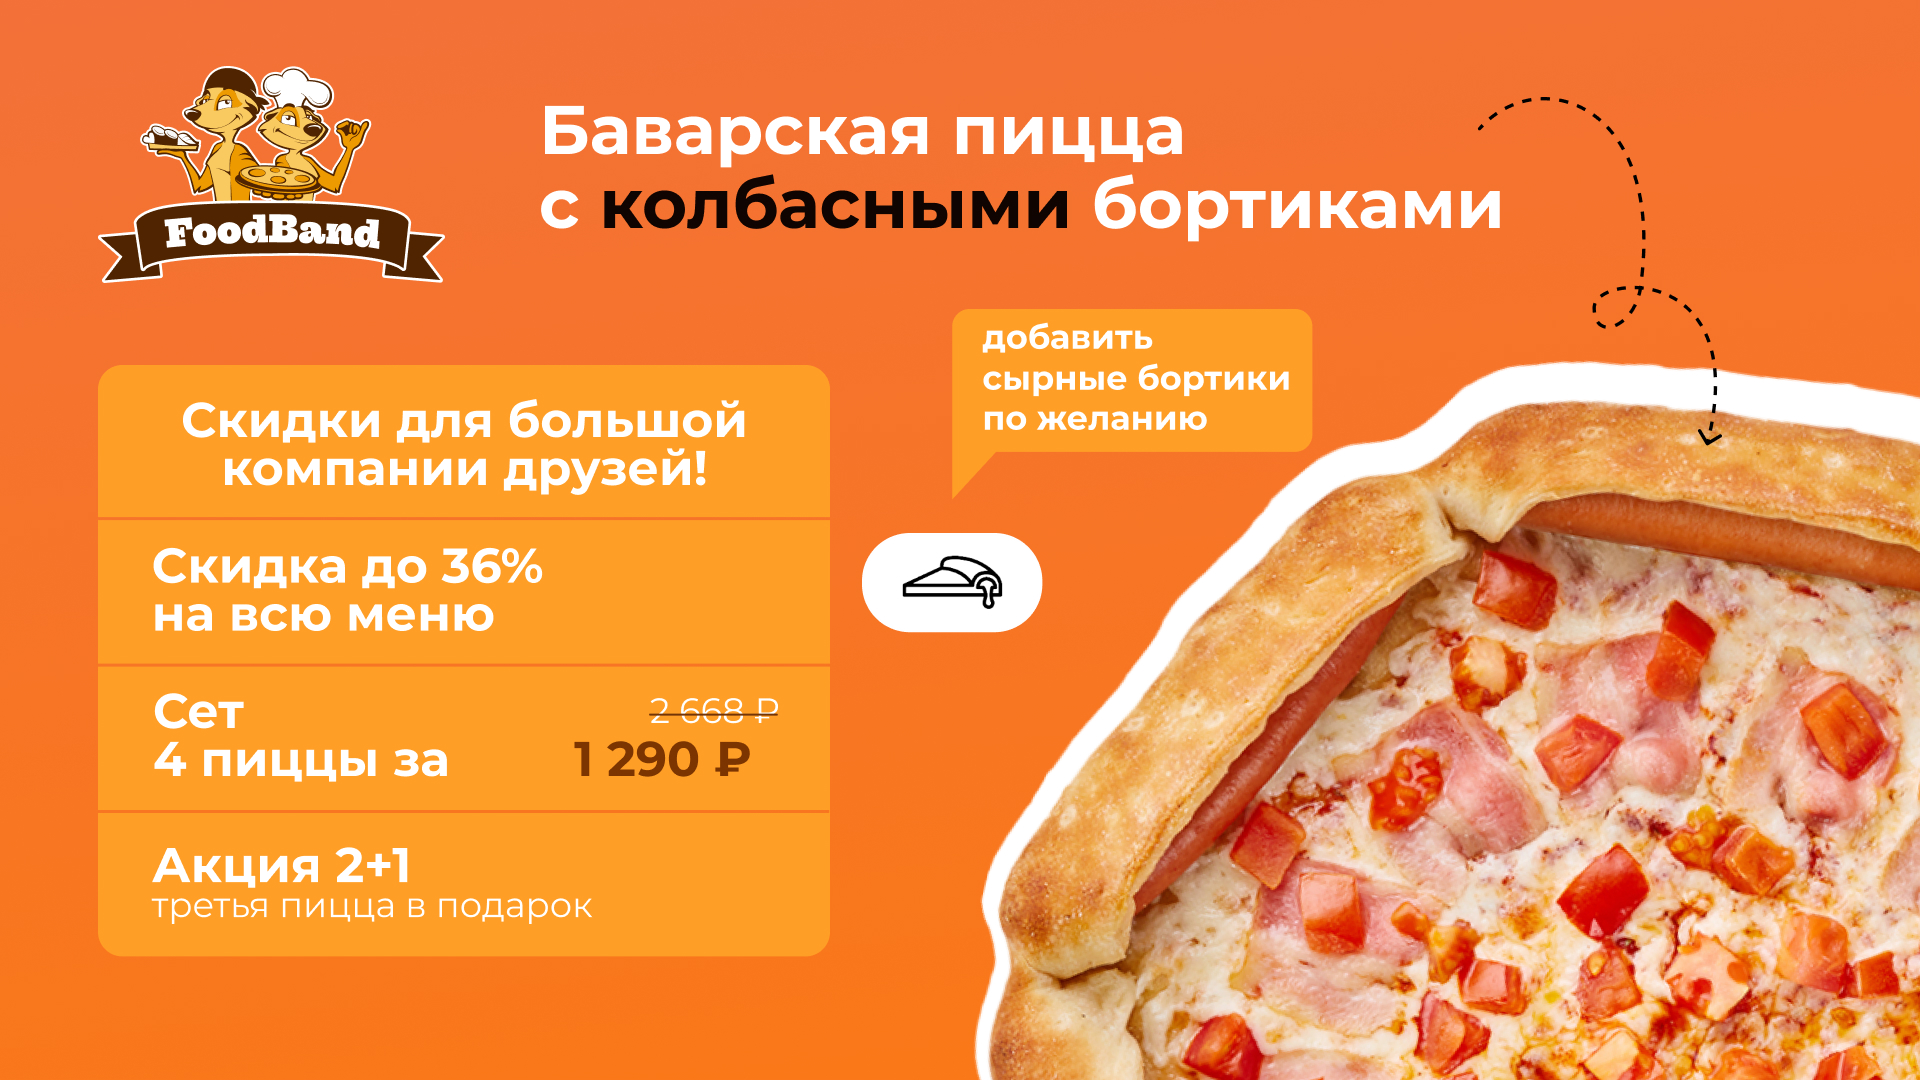 Промокод FoodBand — Скидка до 36% на всё меню на сайте и в приложении для всех!